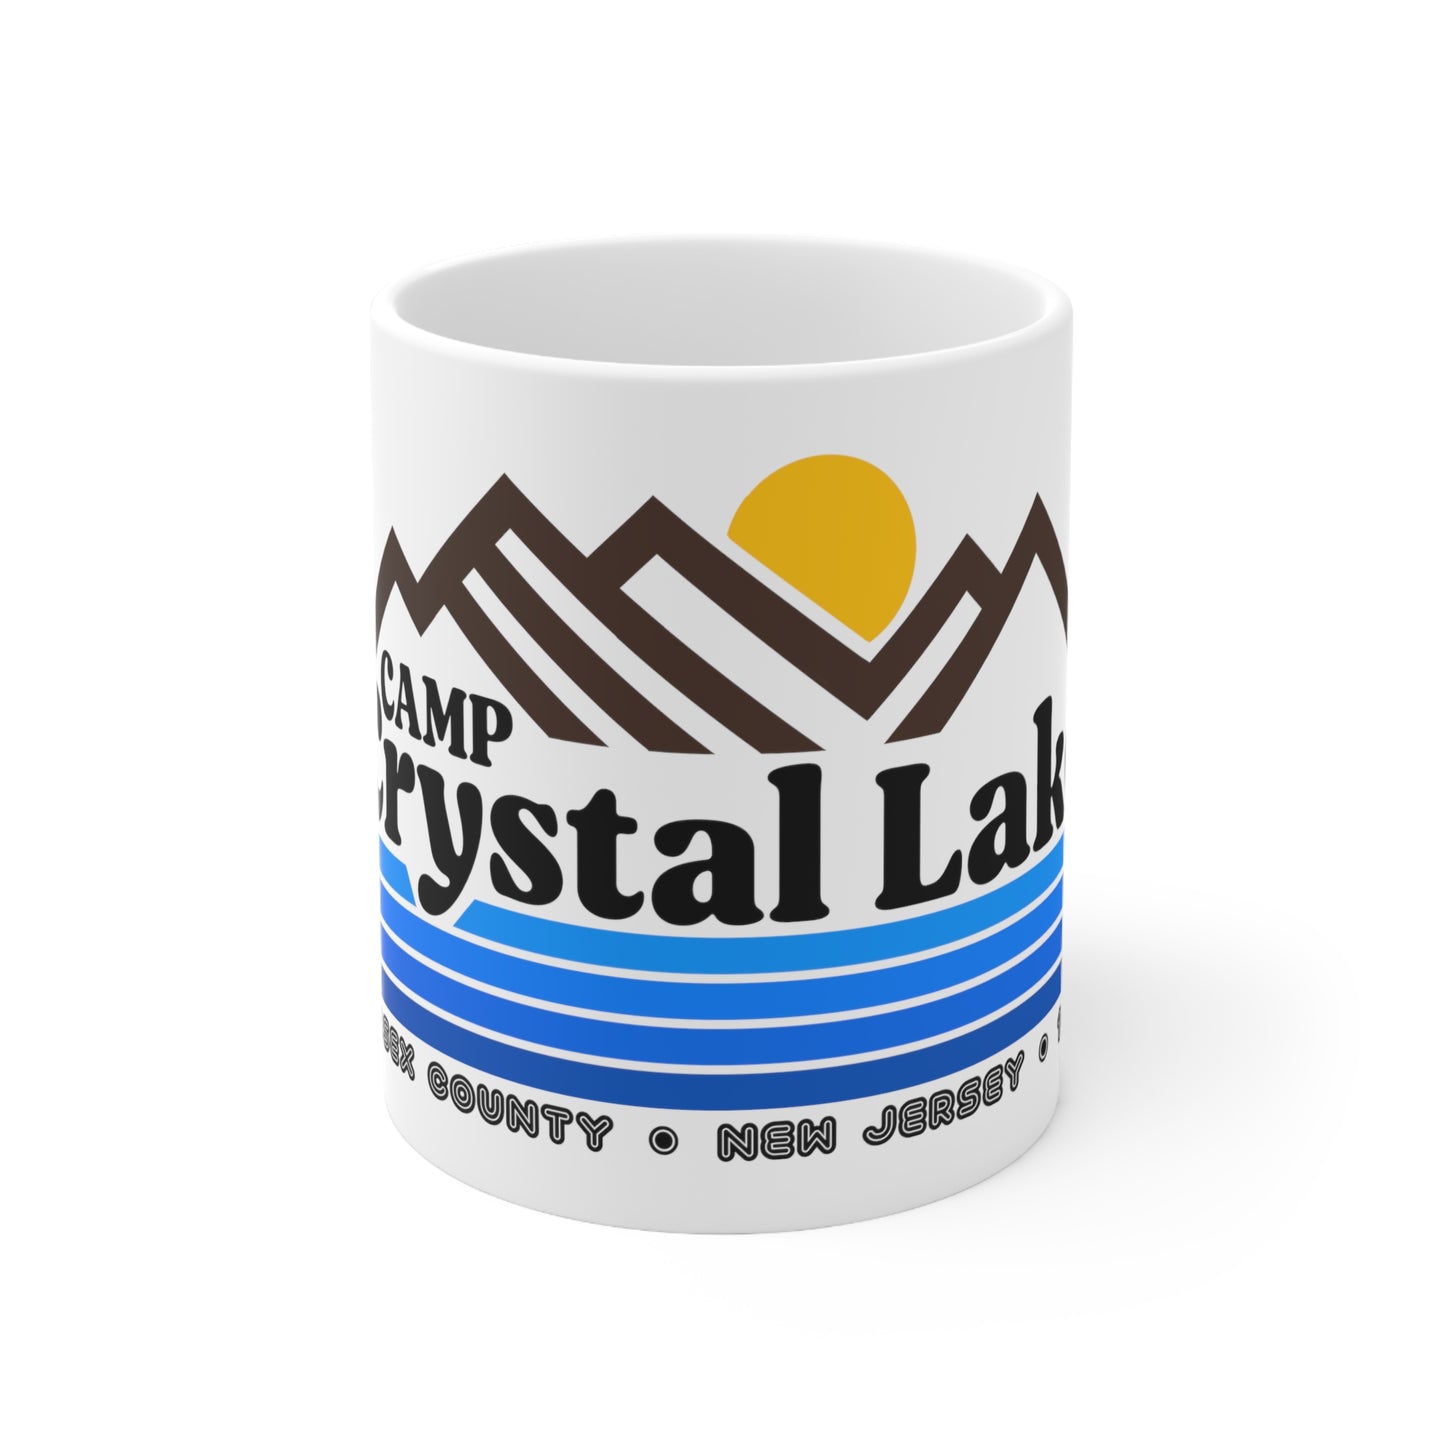 Camp Crystal Lake Ceramic Mug